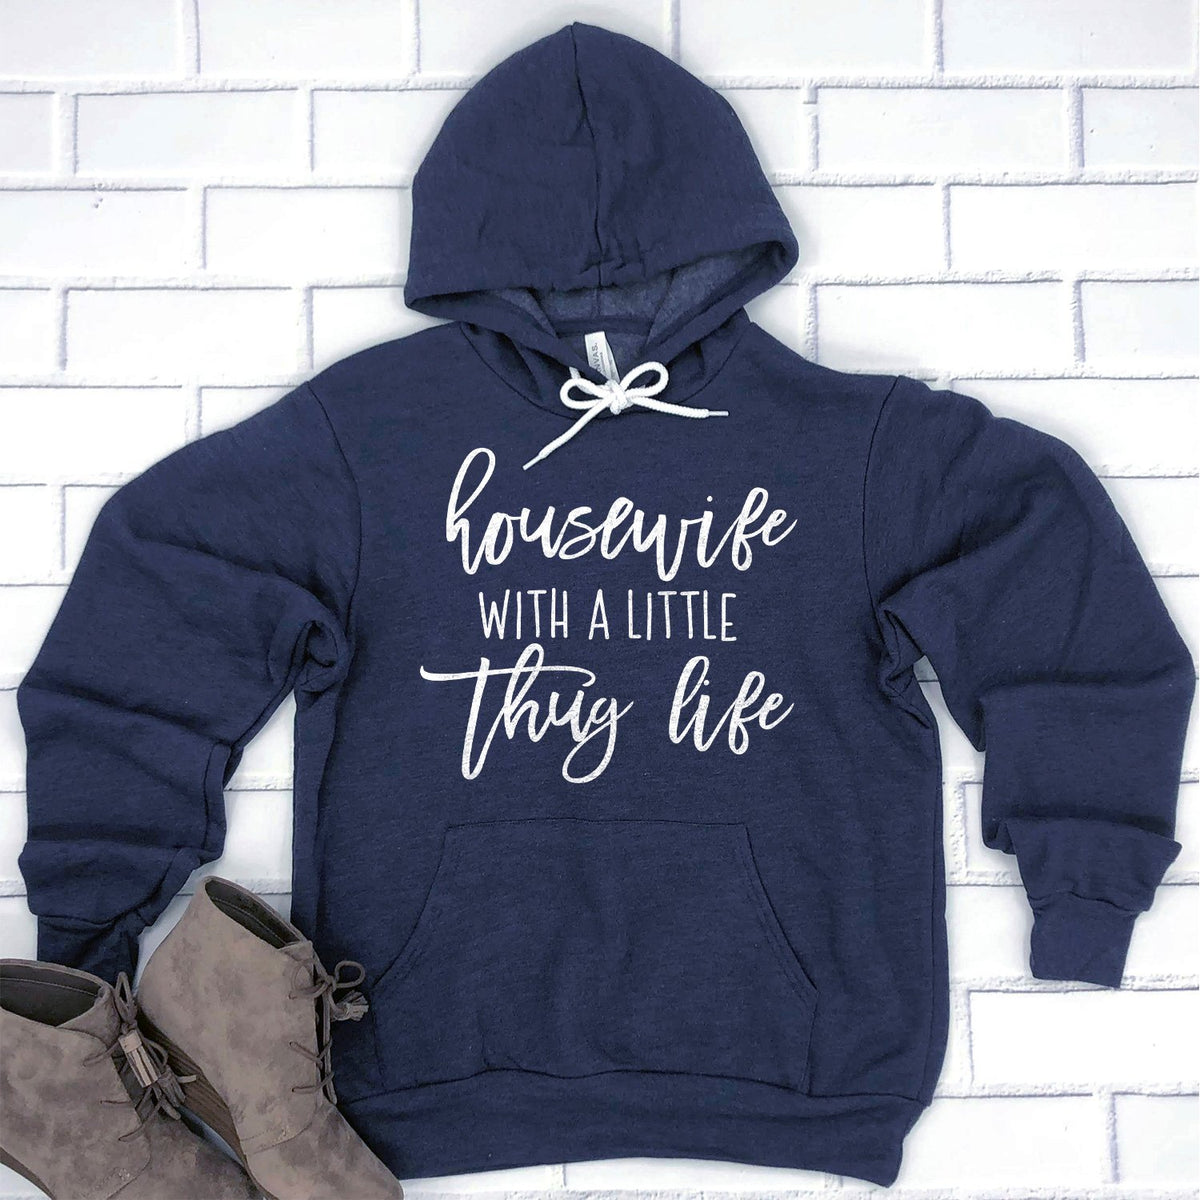 Housewife With A Little Thug Life - Hoodie Sweatshirt